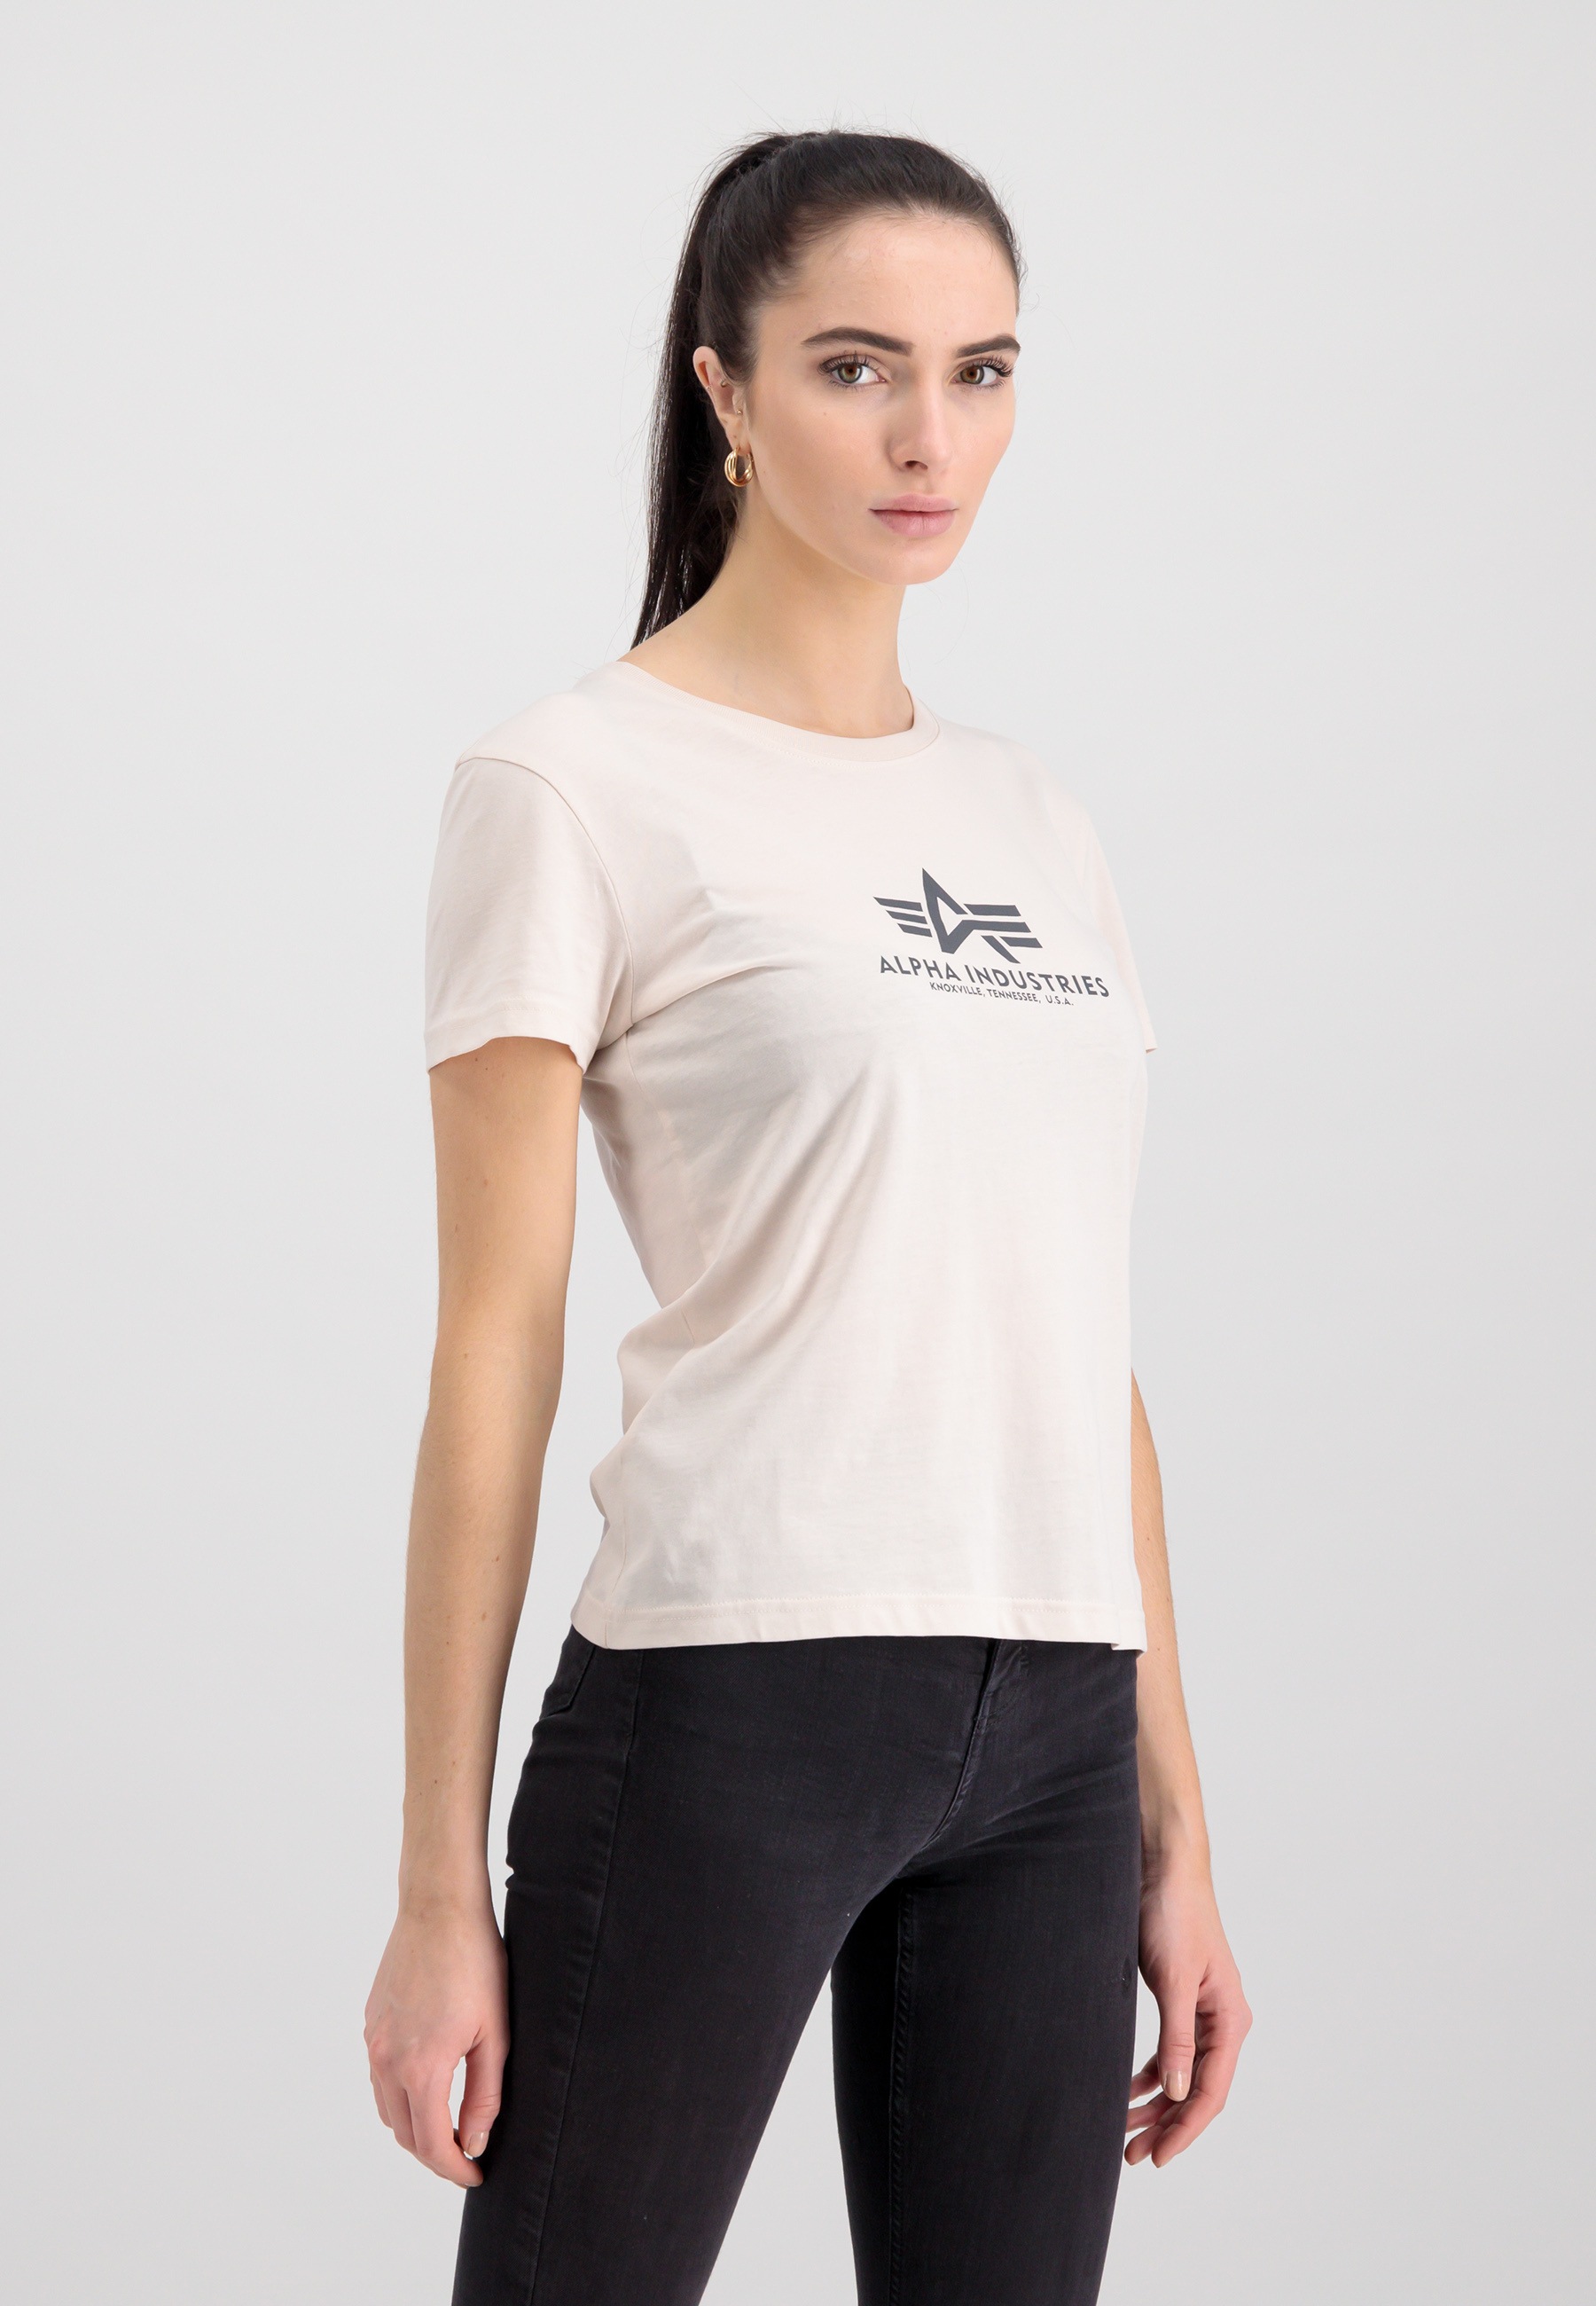 bestellen Industries Industries Women OTTO Shop Wmn« T »Alpha - Online New im Basic T-Shirts Alpha T-Shirt